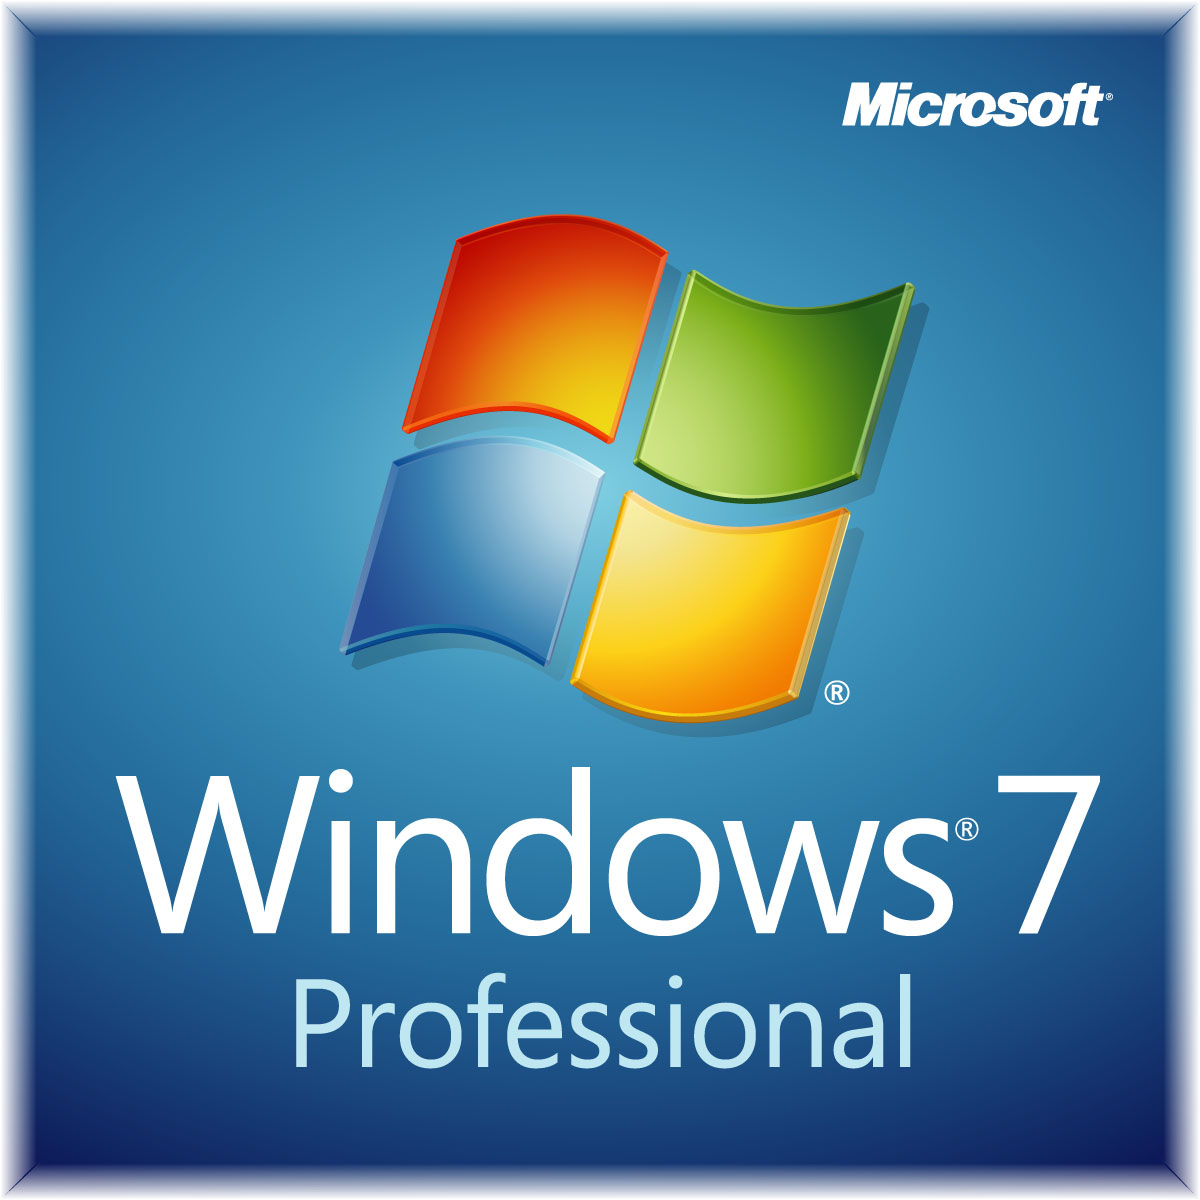 ΛΕΙΤΟΥΡΓΙΚΟ ΣΥΣΤΗΜΑ Windows 7 PROFESSIONAL 64 BIT ENGLISH